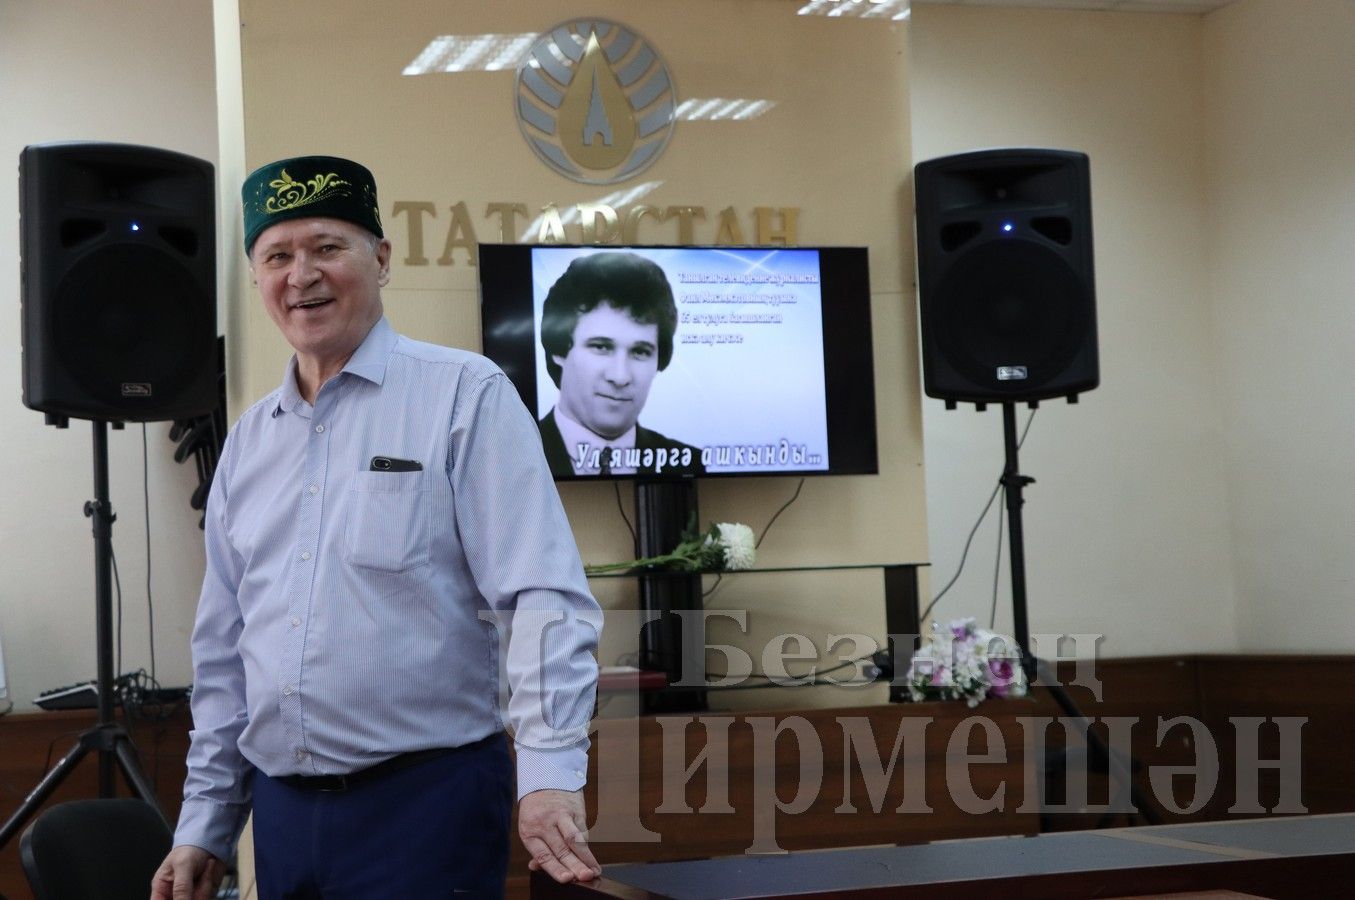 В Доме журналиста состоялся день памяти известного тележурналиста Фаиля Мухаметова (ФОТОРЕПОРТАЖ)